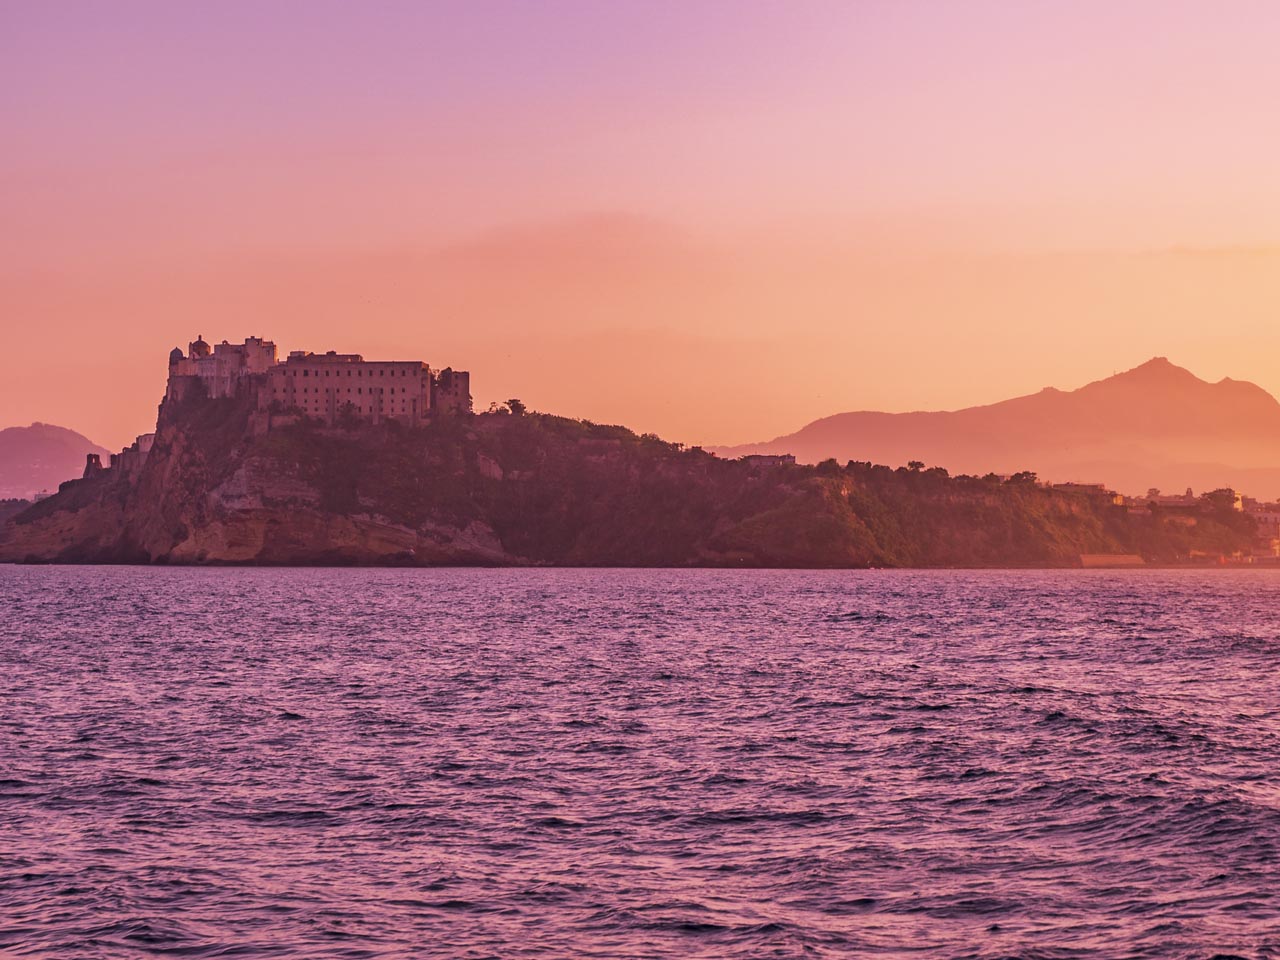 La navigazione Napoli Ischia dura circa 90 minuti in traghetto e permette di ammirare un paesaggio meraviglioso! 